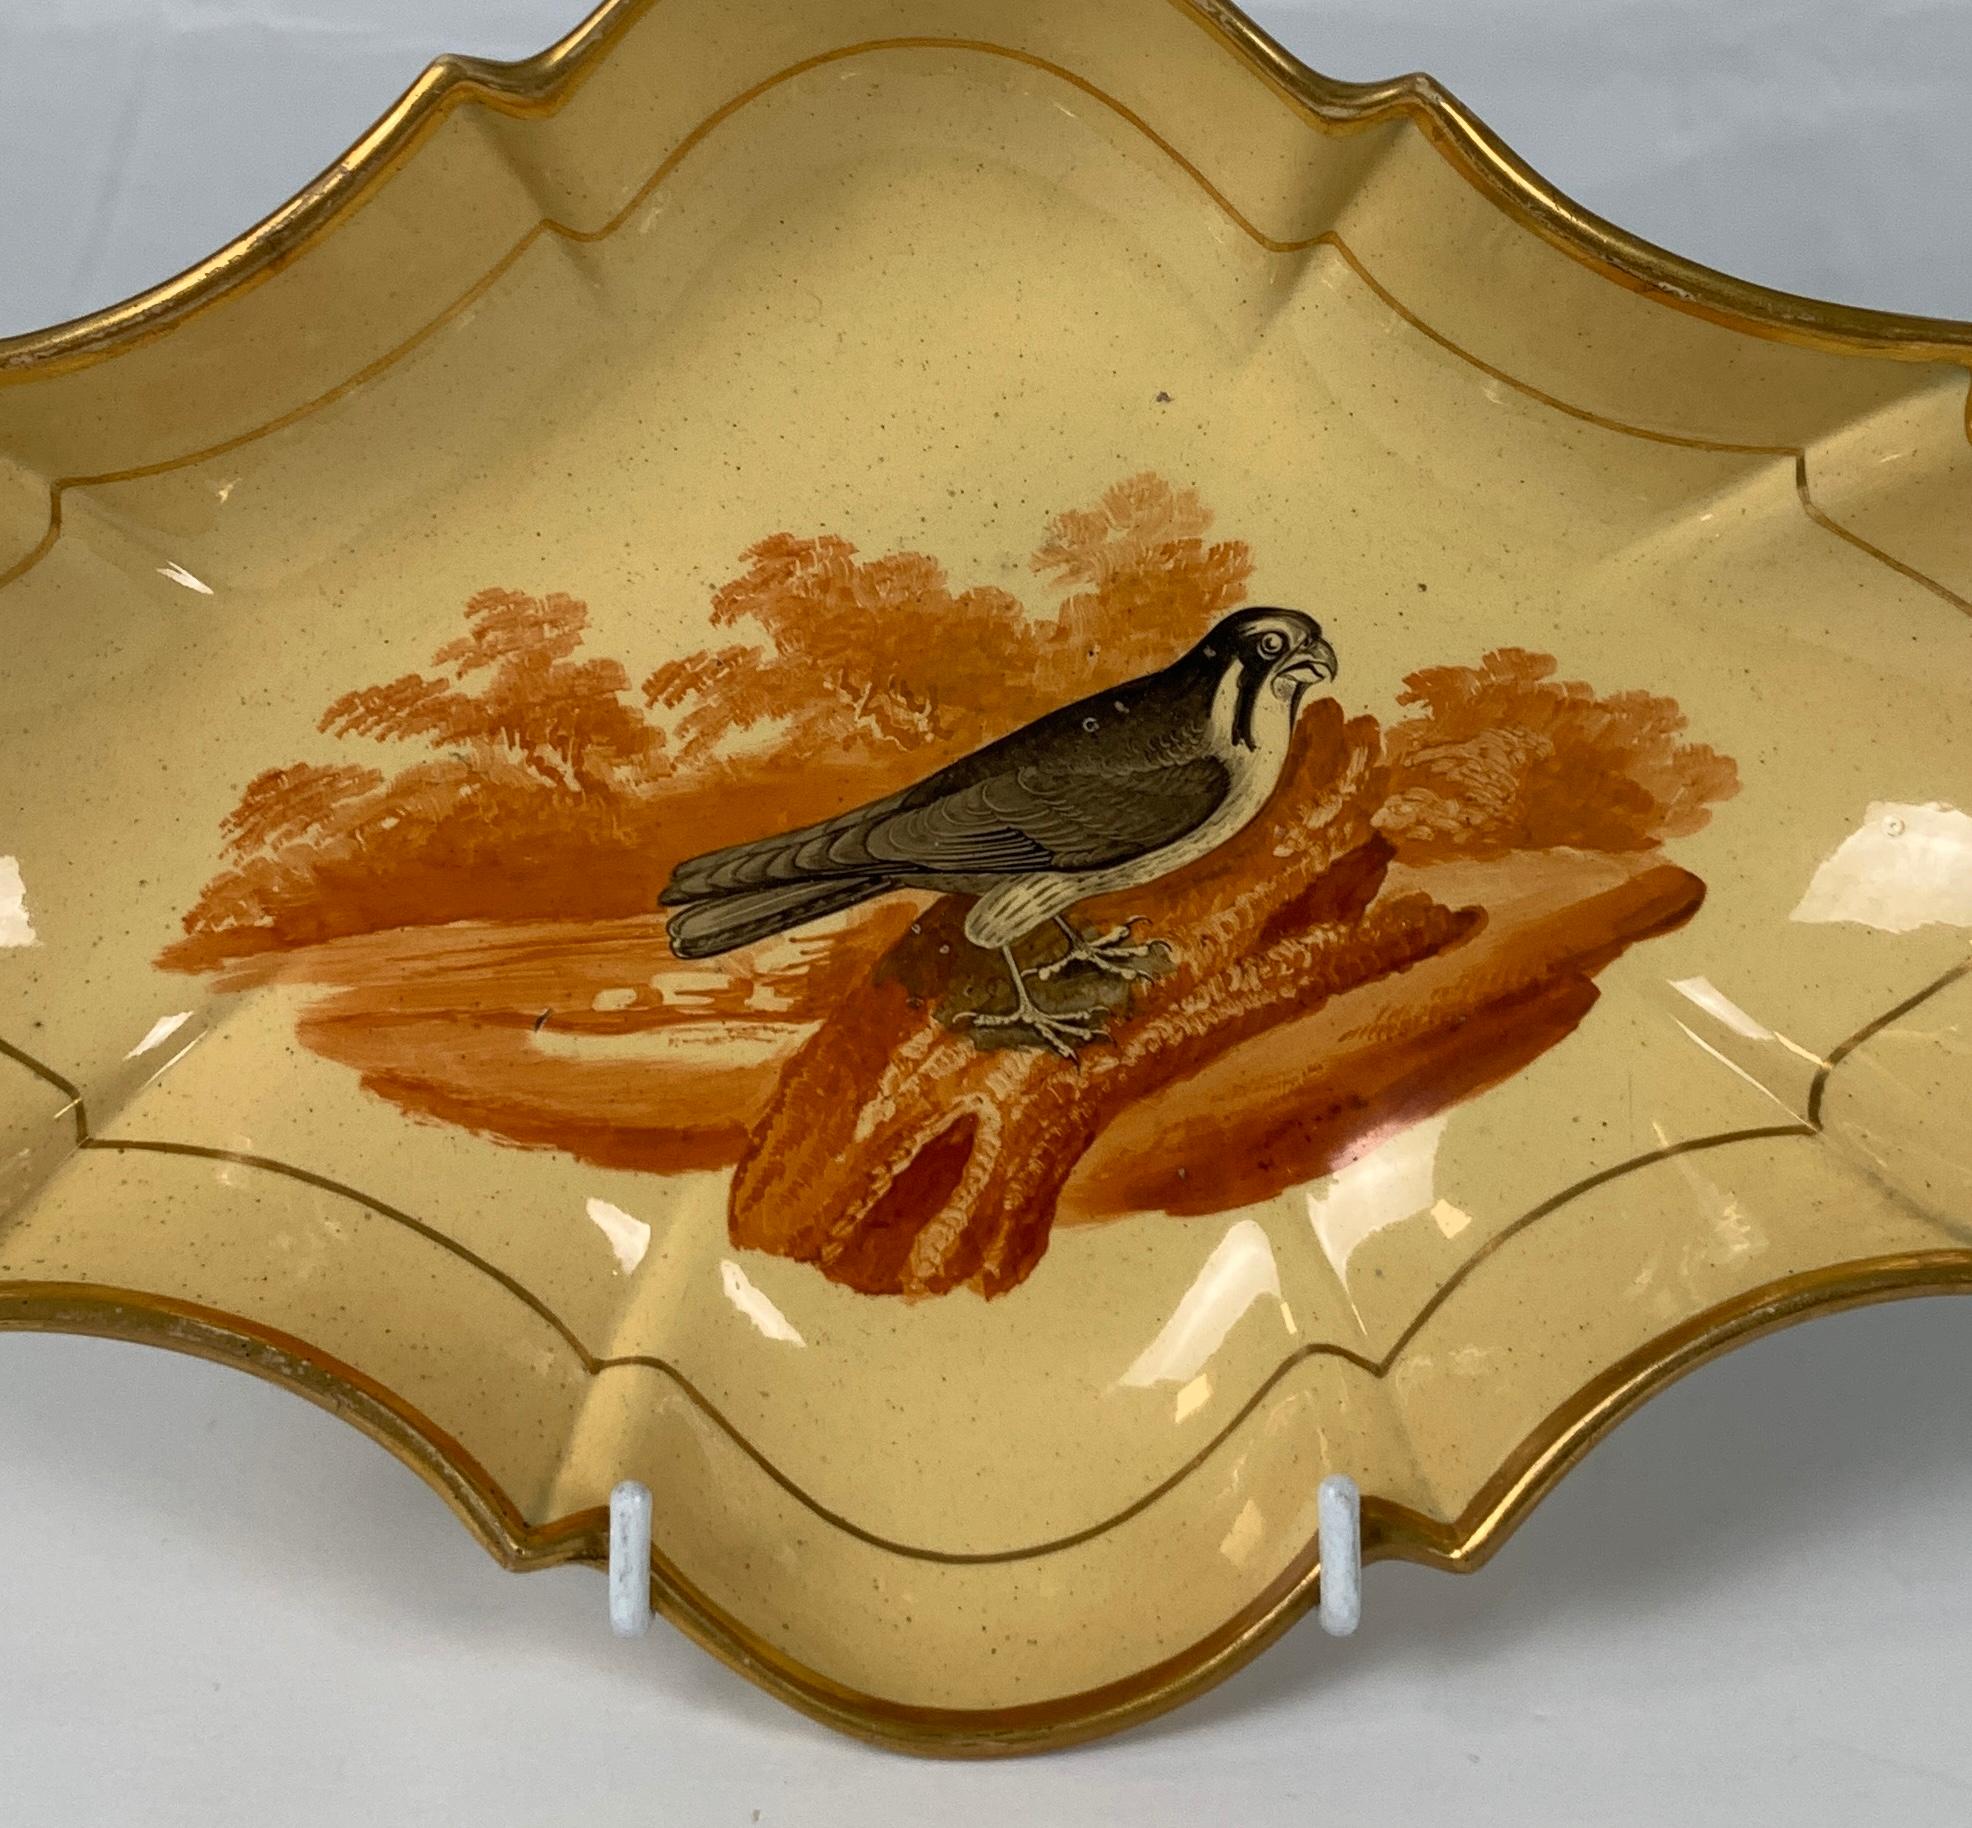 Diese unglaublich seltene ovale Drabware-Schale wurde 1802-1808 in England von Job Ridgway hergestellt und zeigt einen Falken, der auf einem Baumstamm thront. Das Bild ist gestochen scharf. Laut dem Online-Musterbuch von Ridgway handelt es sich um